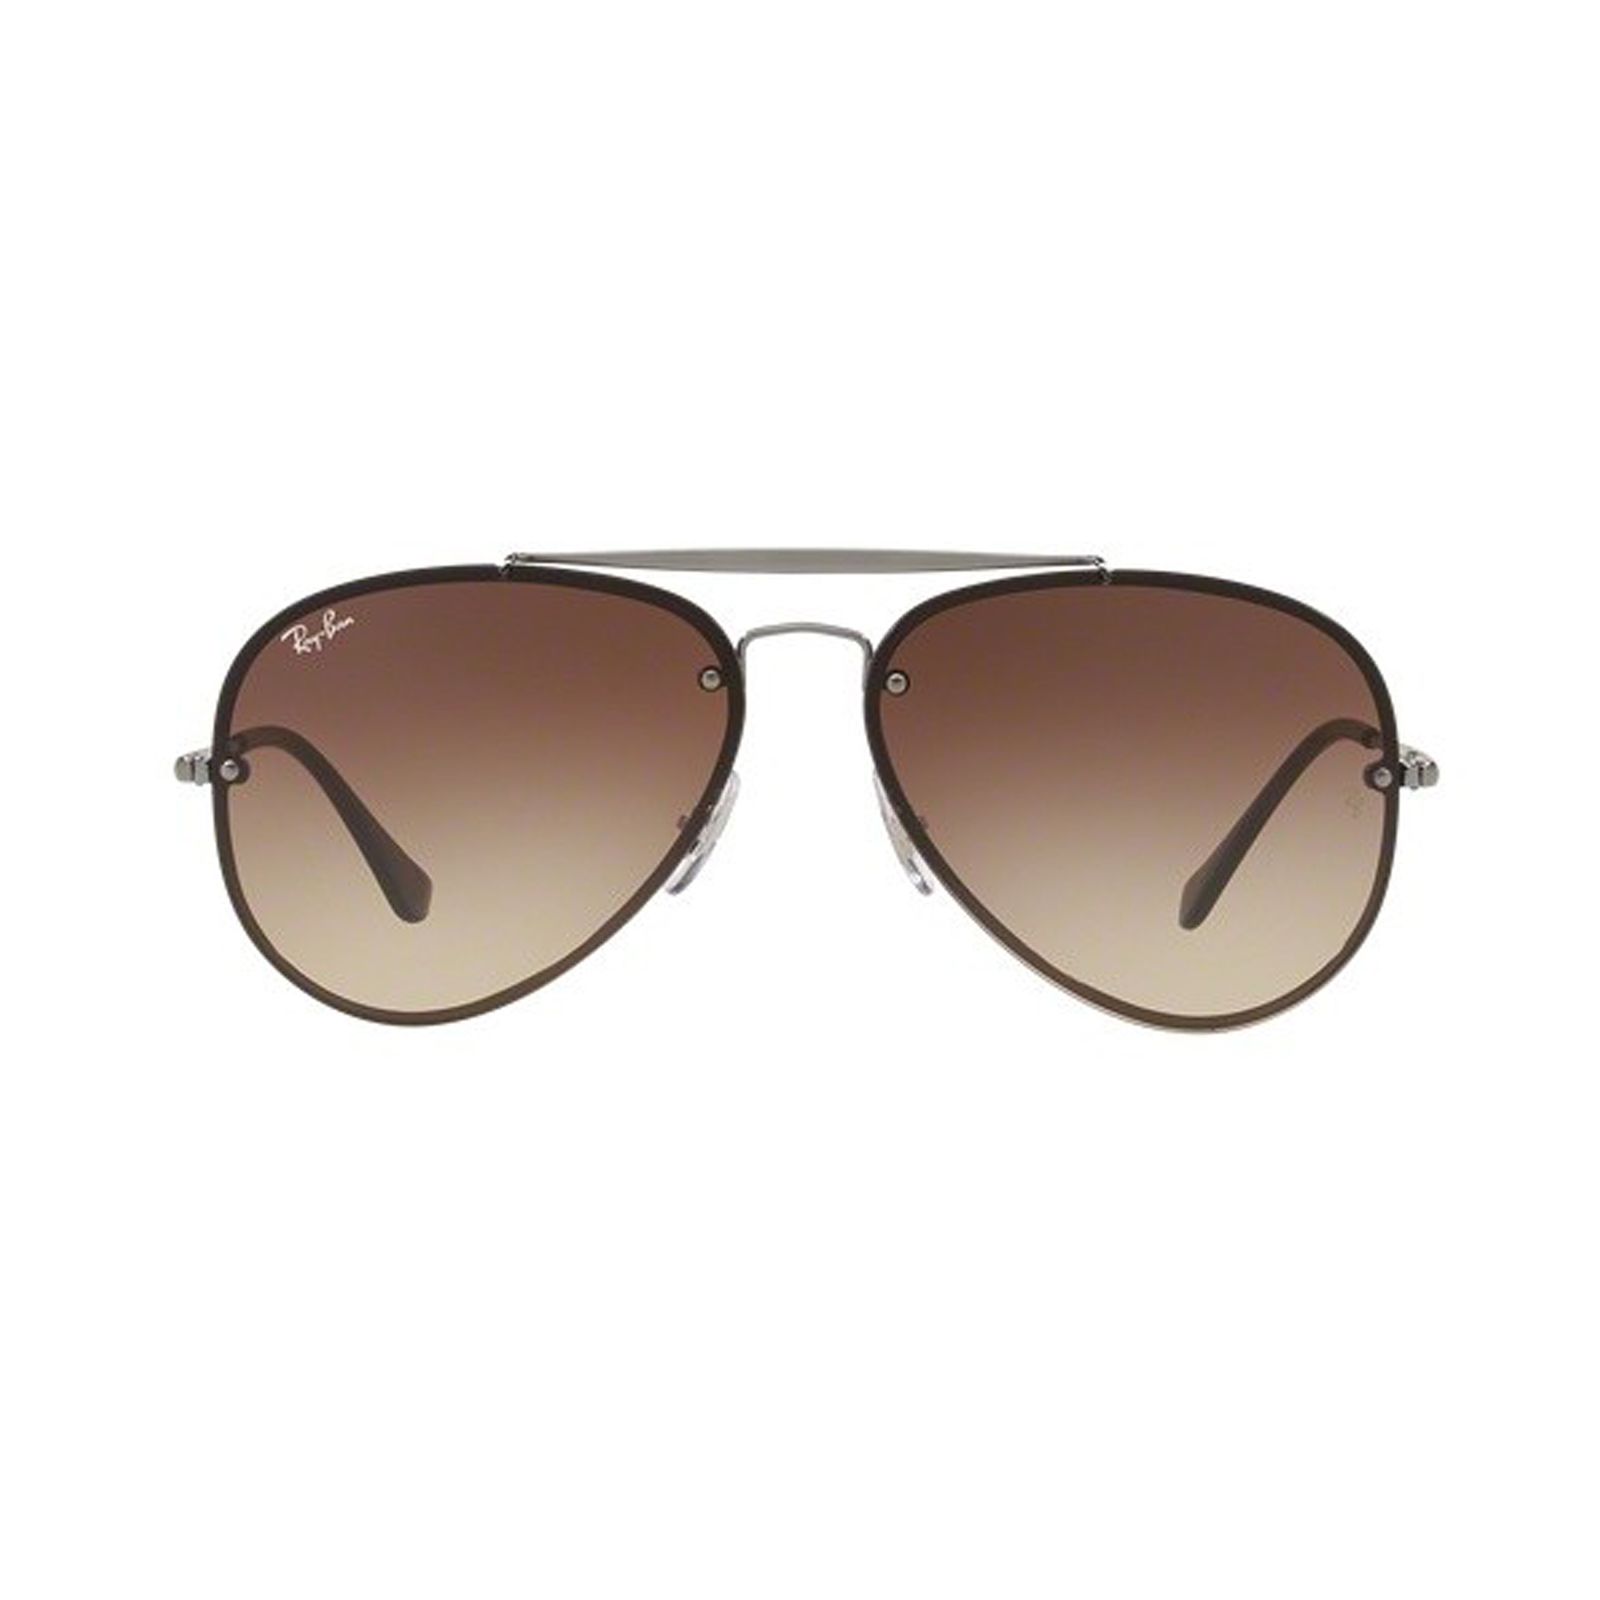 عینک آفتابی ری بن مدل 3584-004/13-61 - خاکستری - 1